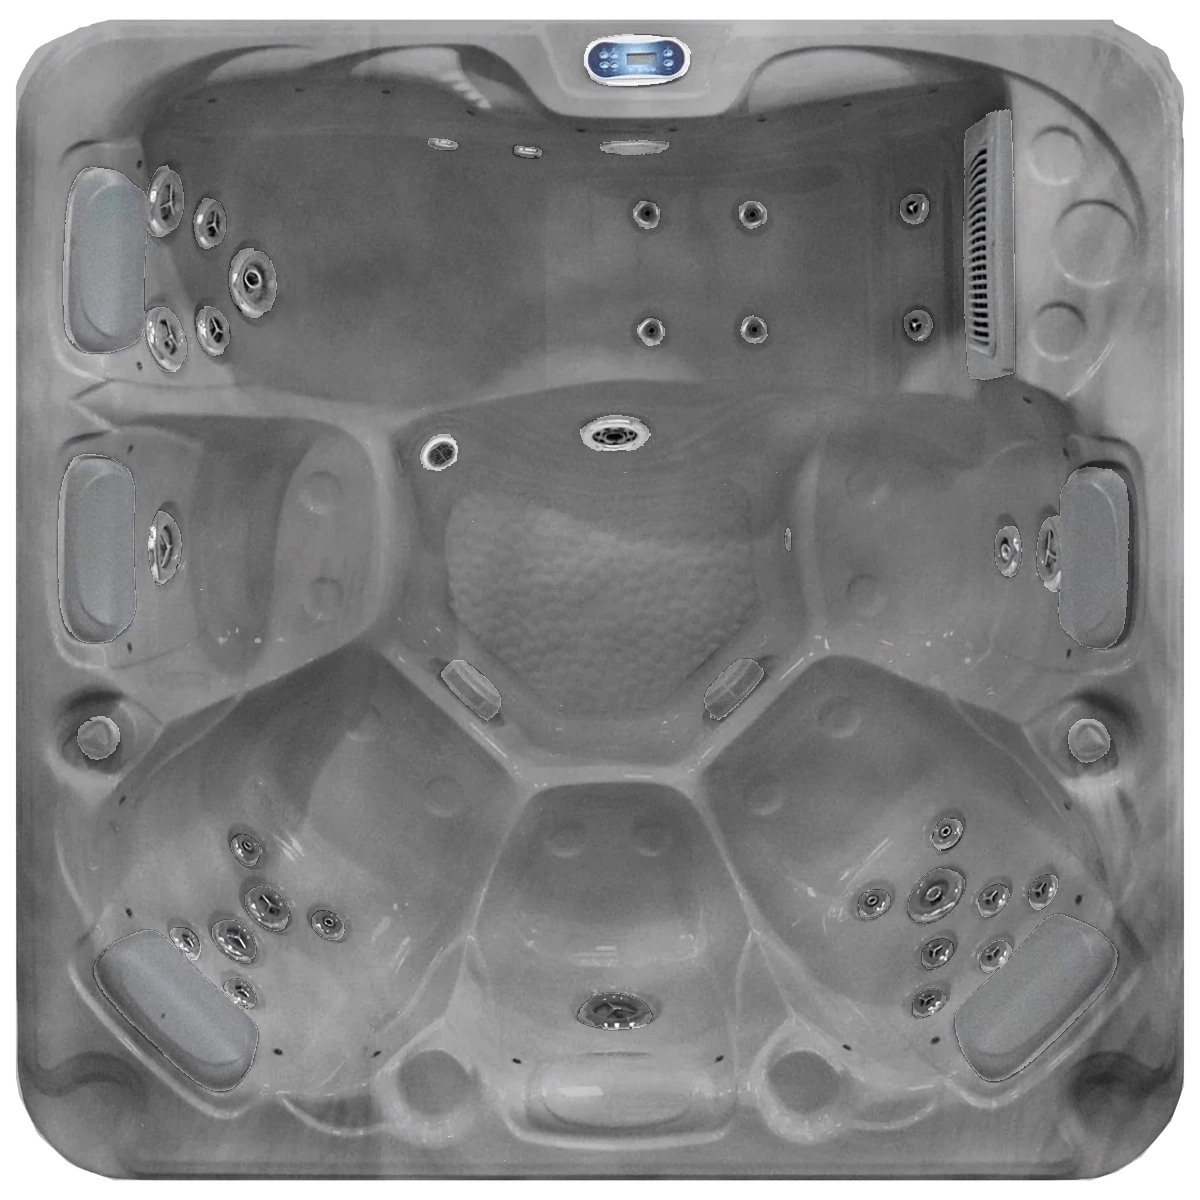 SB349L - 6 Person Plug & Play Hot Tub Spa